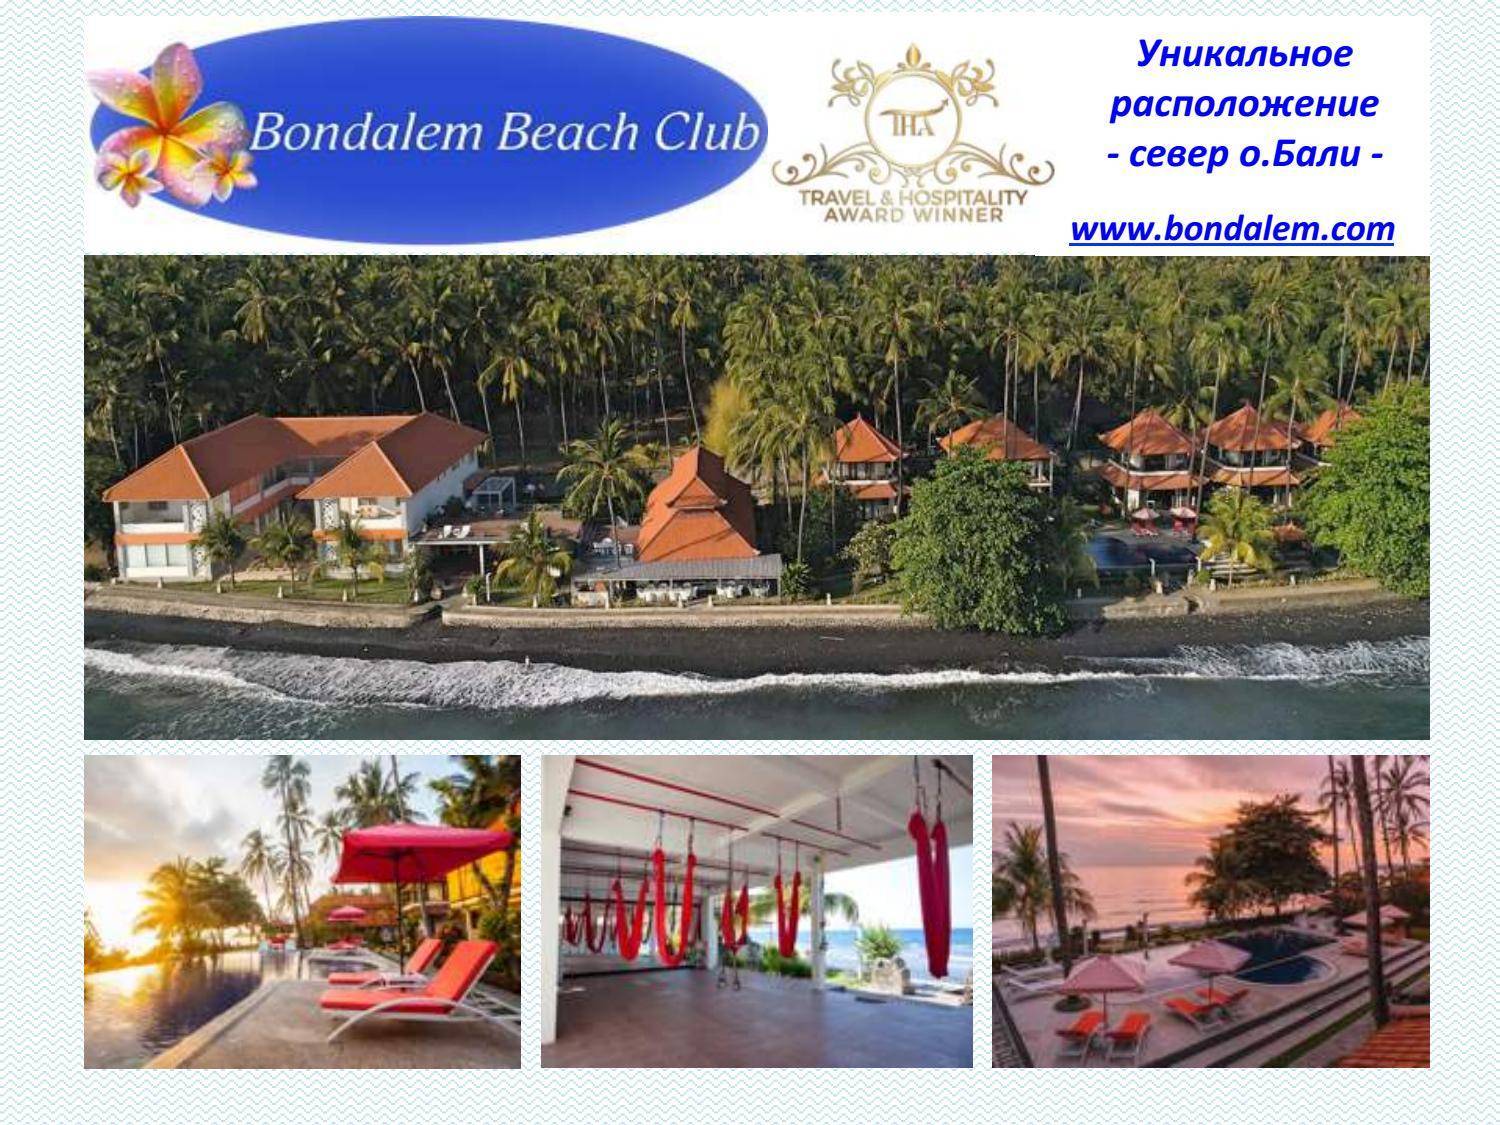 Bondalem beach club